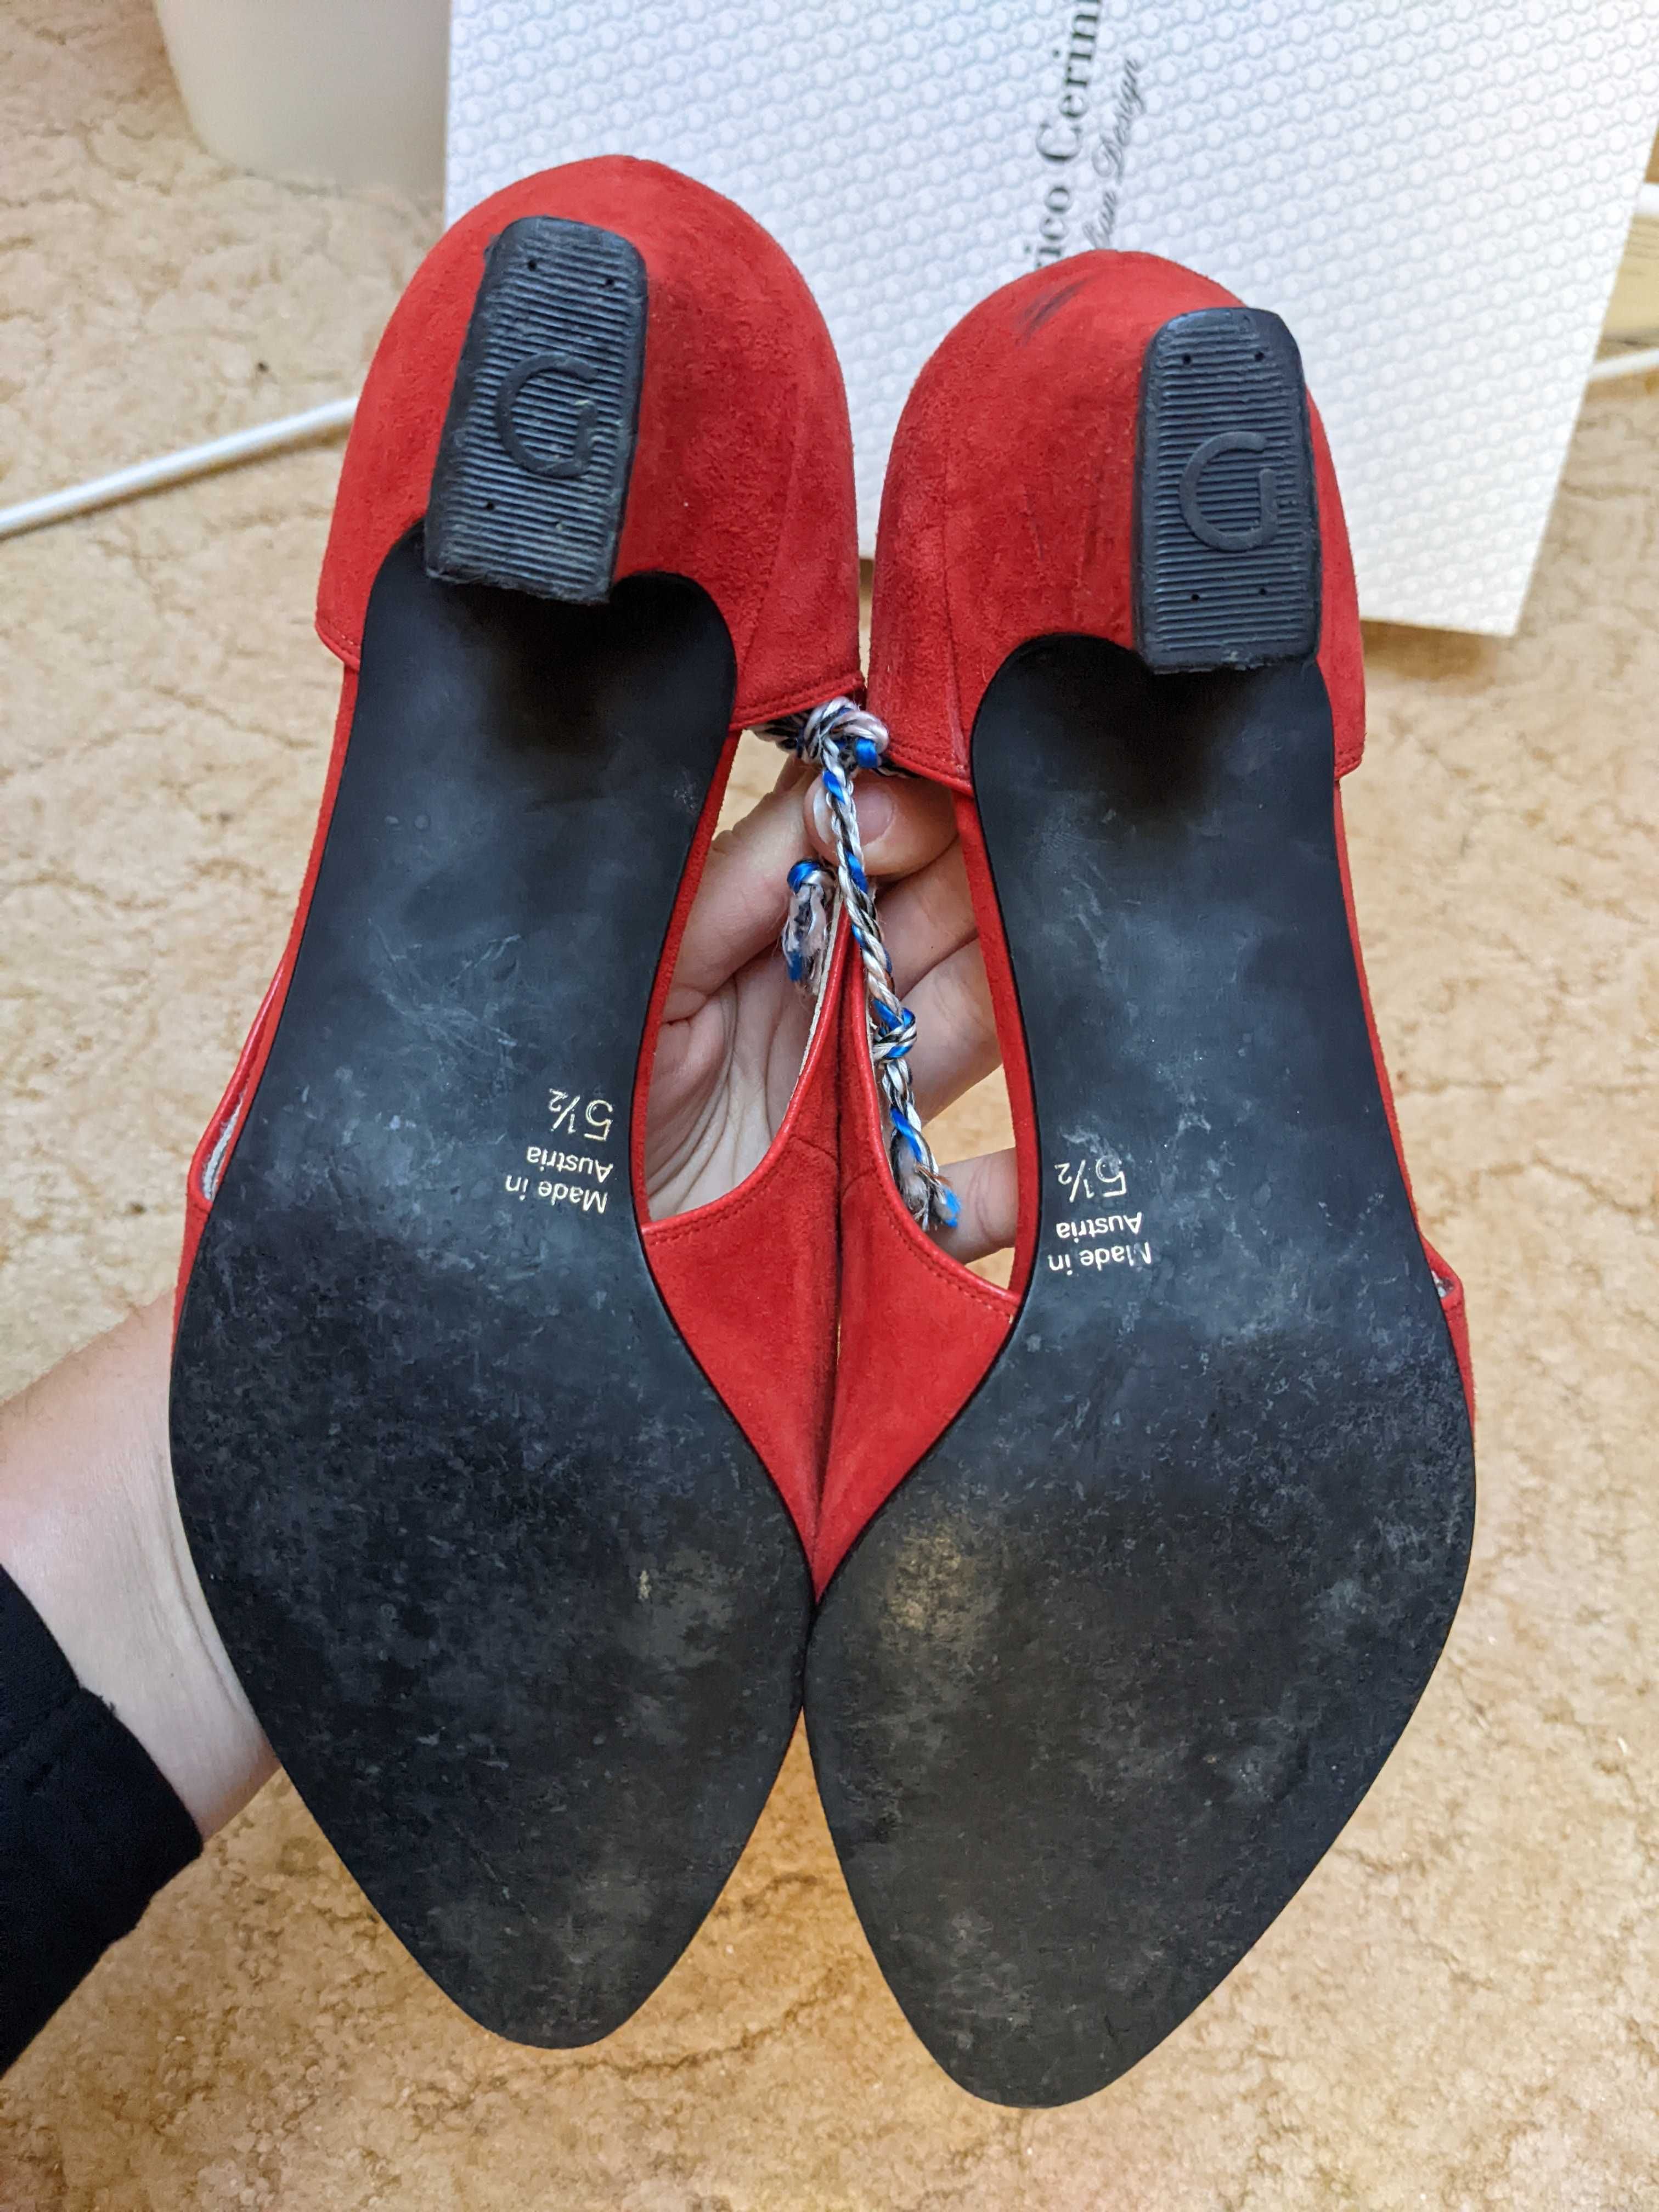 Кожаные красные туфли с Италии, 25 см